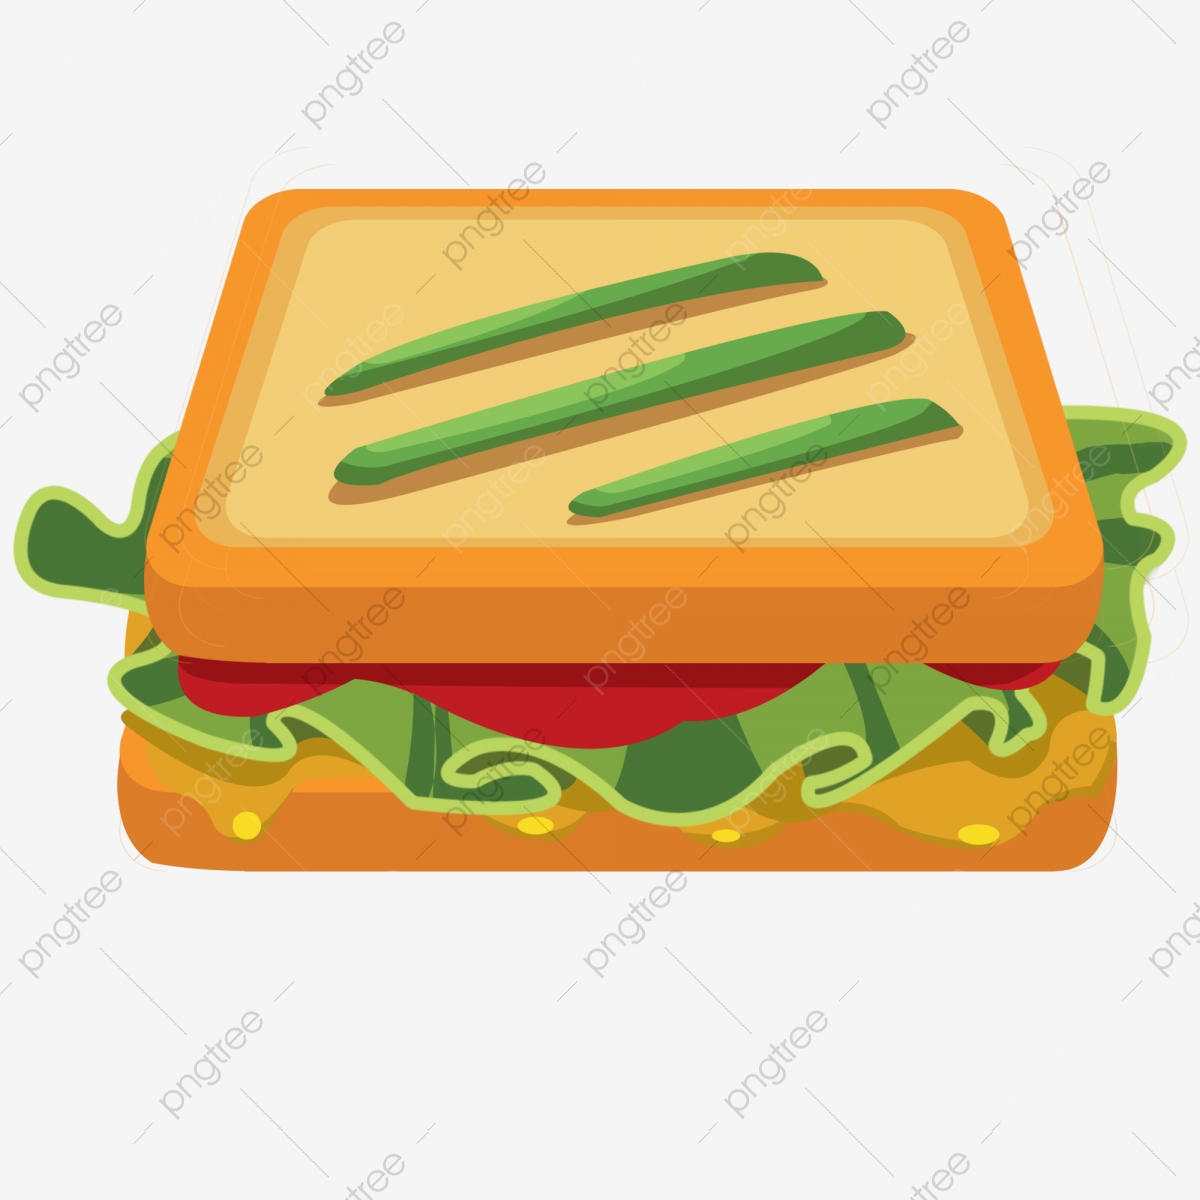 sandwich clipart bread sandwich